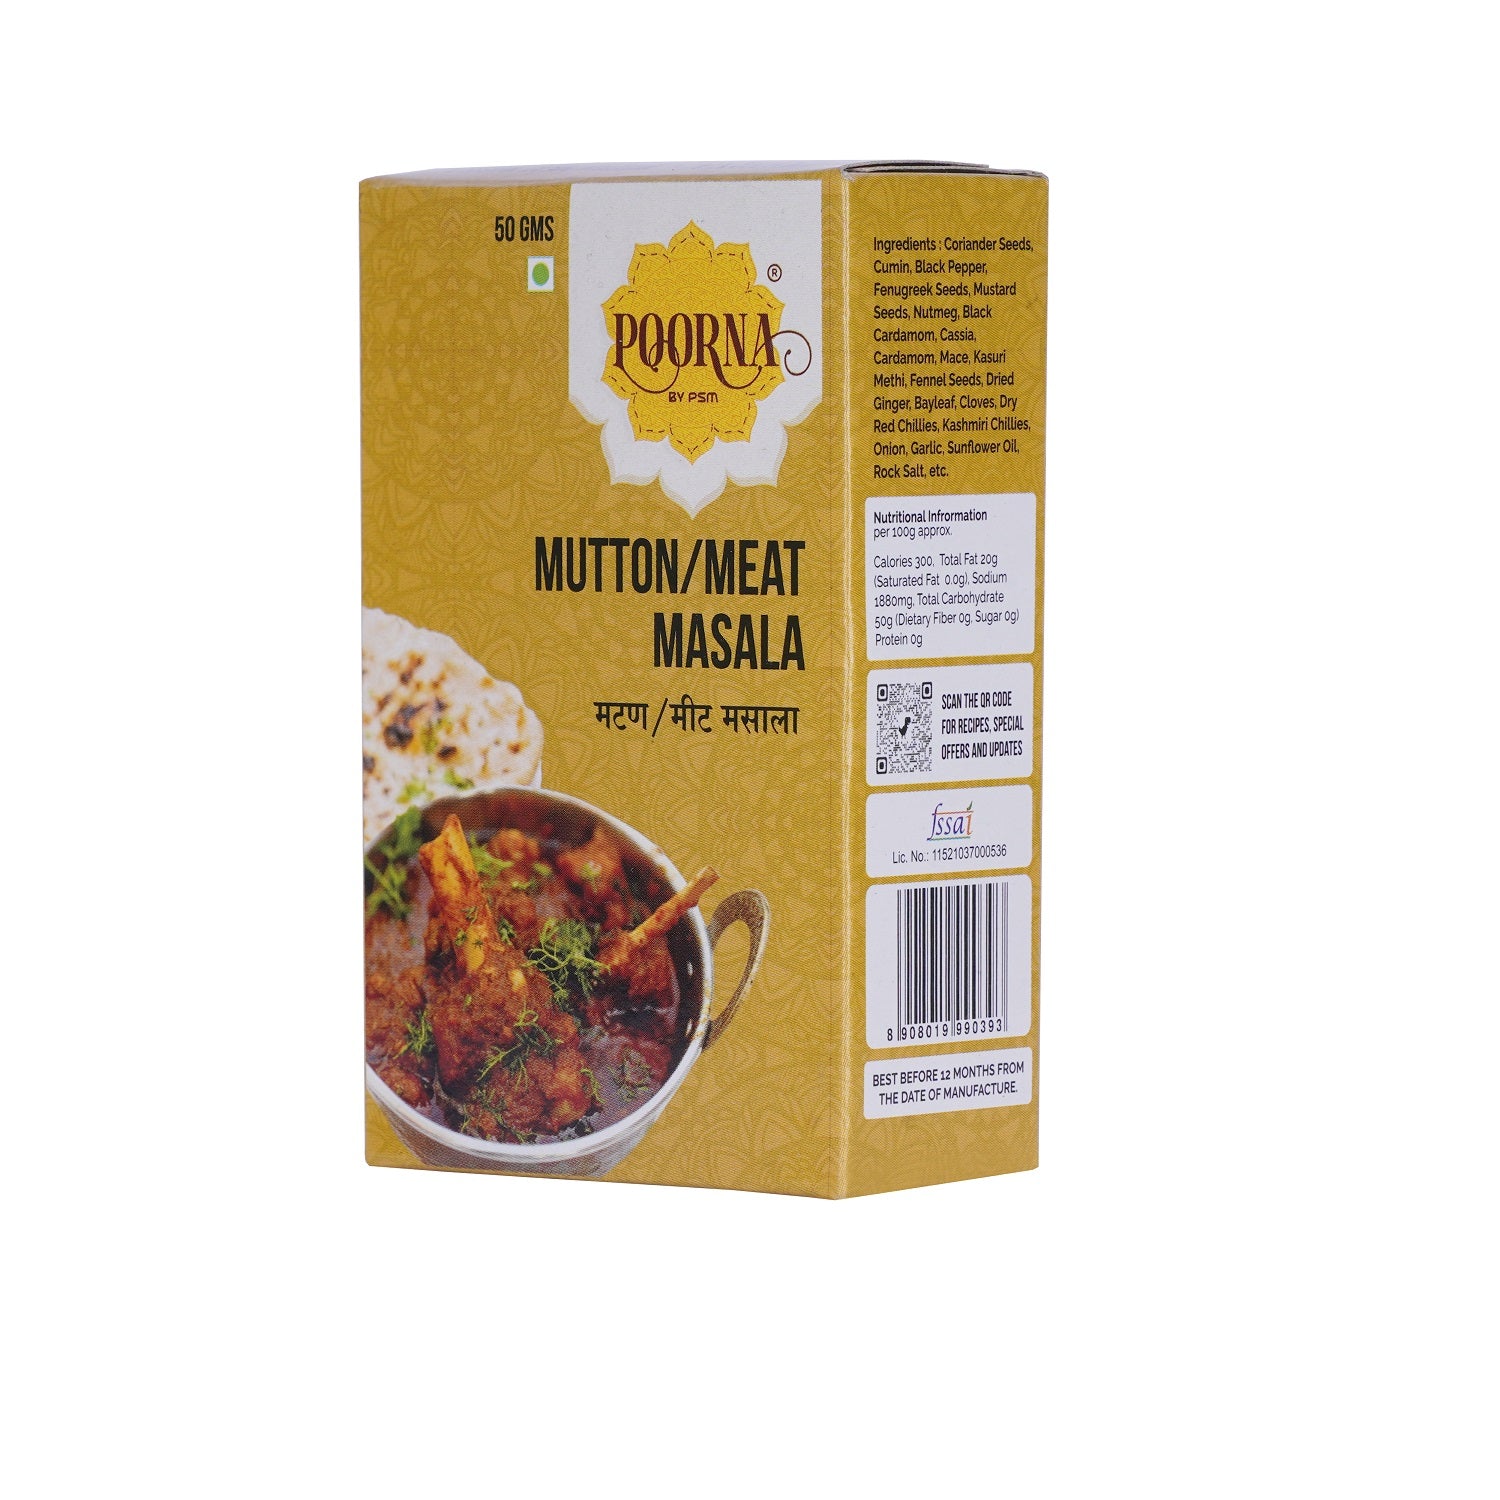 Mutton/Meat Masala-punespice